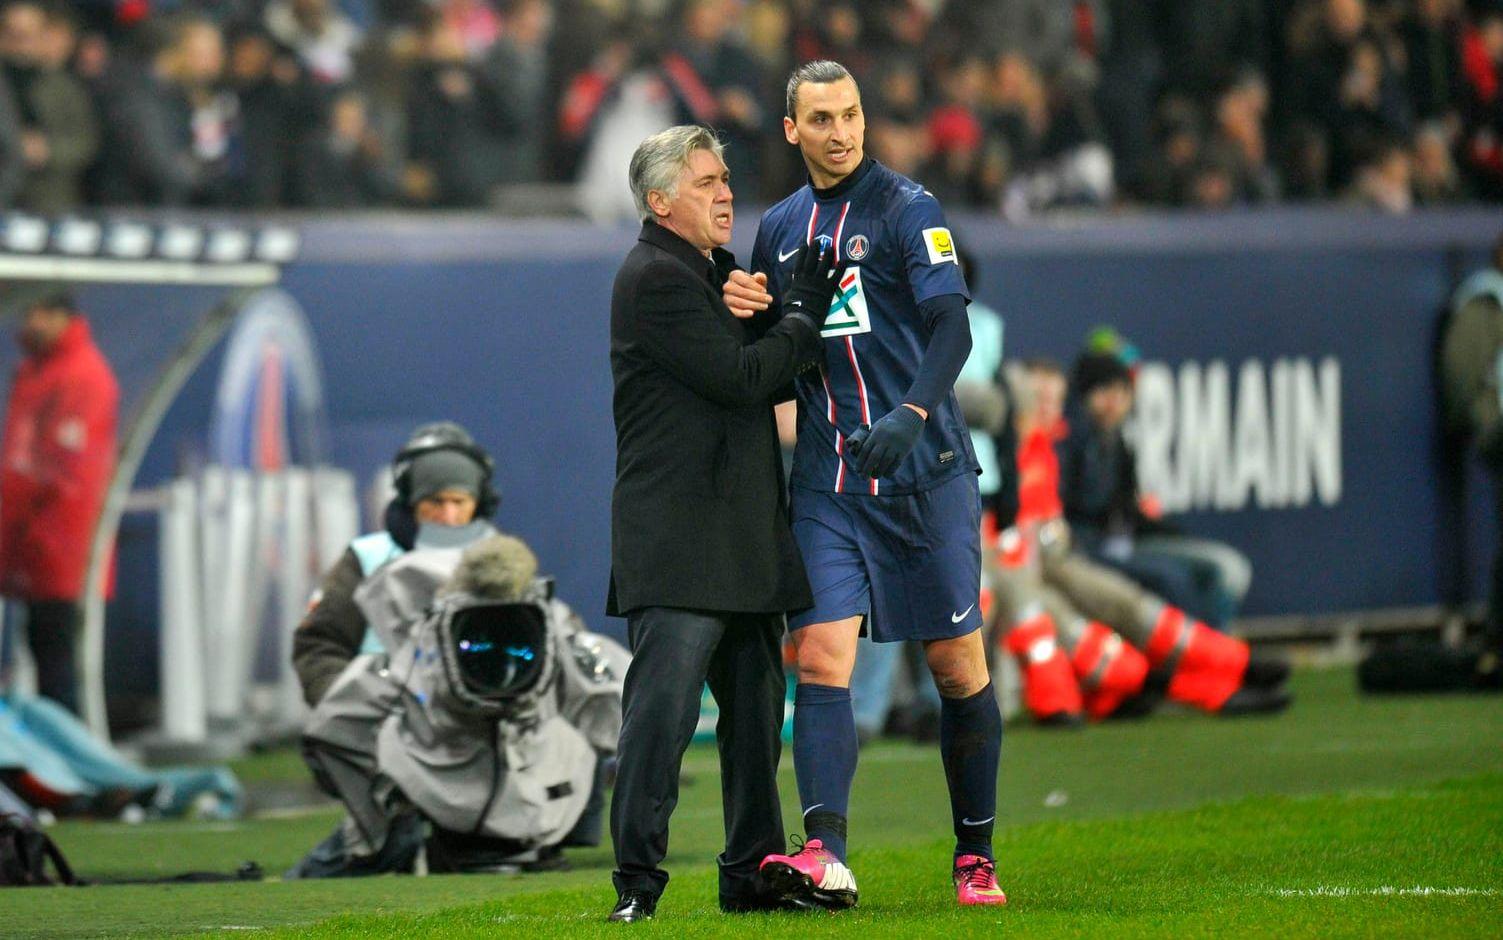 Trots låd-incidenten så tog Ancelotti och Zlatan hem en ligatitel under tiden i PSG. Foto: Bildbyrån